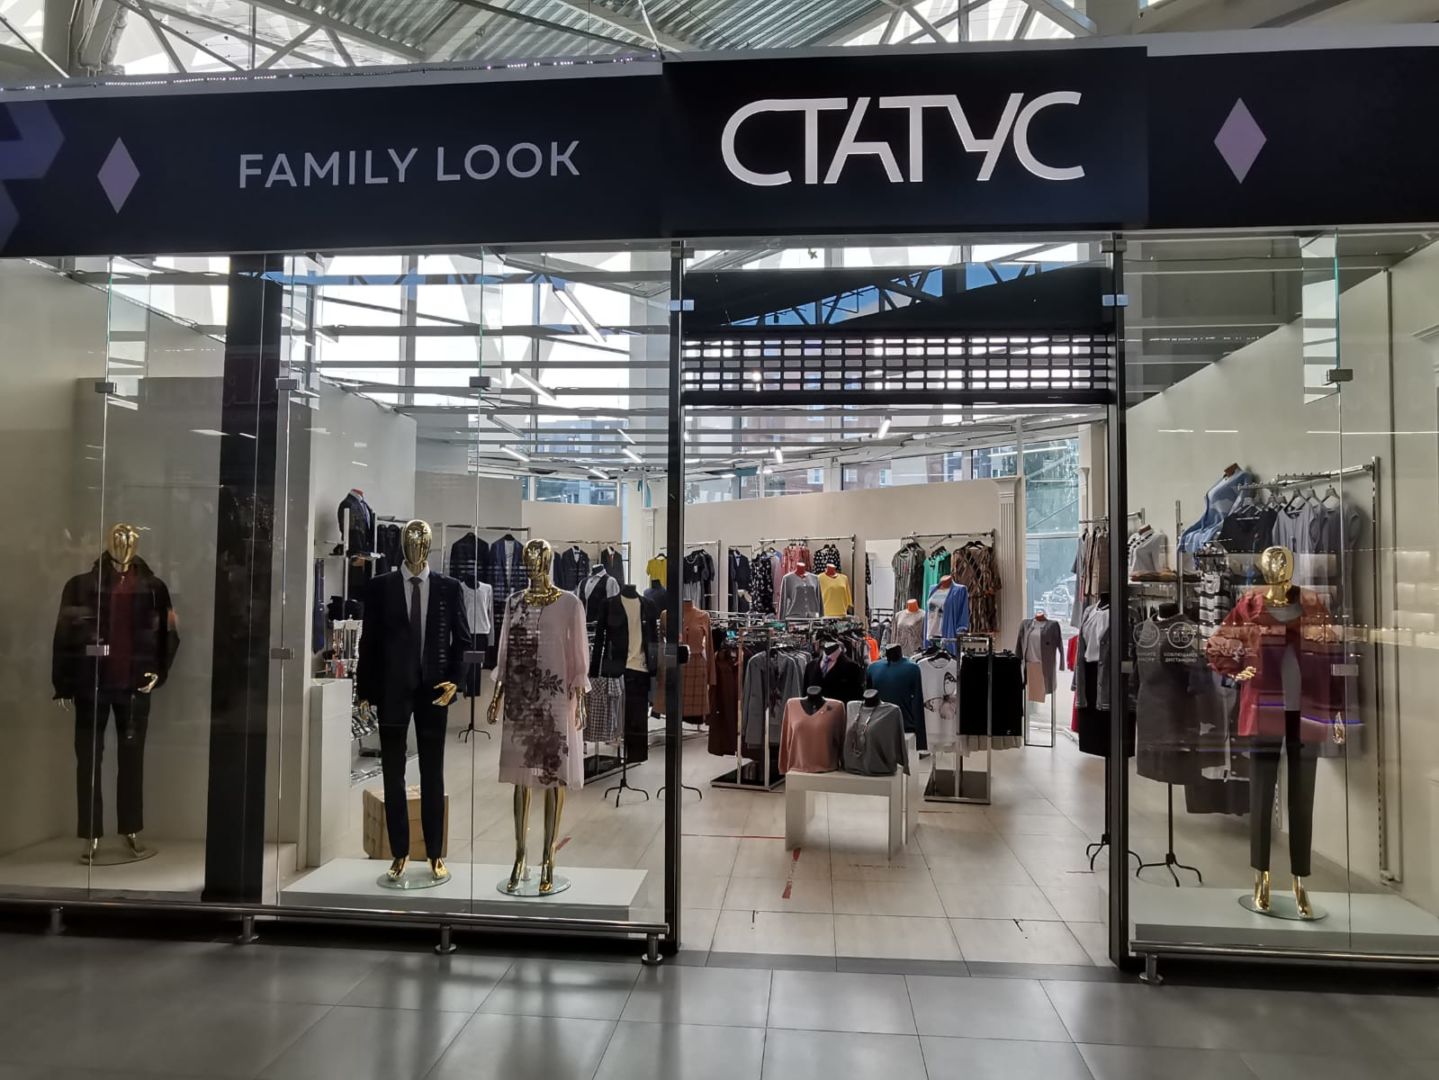 Статус — family look — магазин одежды для женщин и мужчин